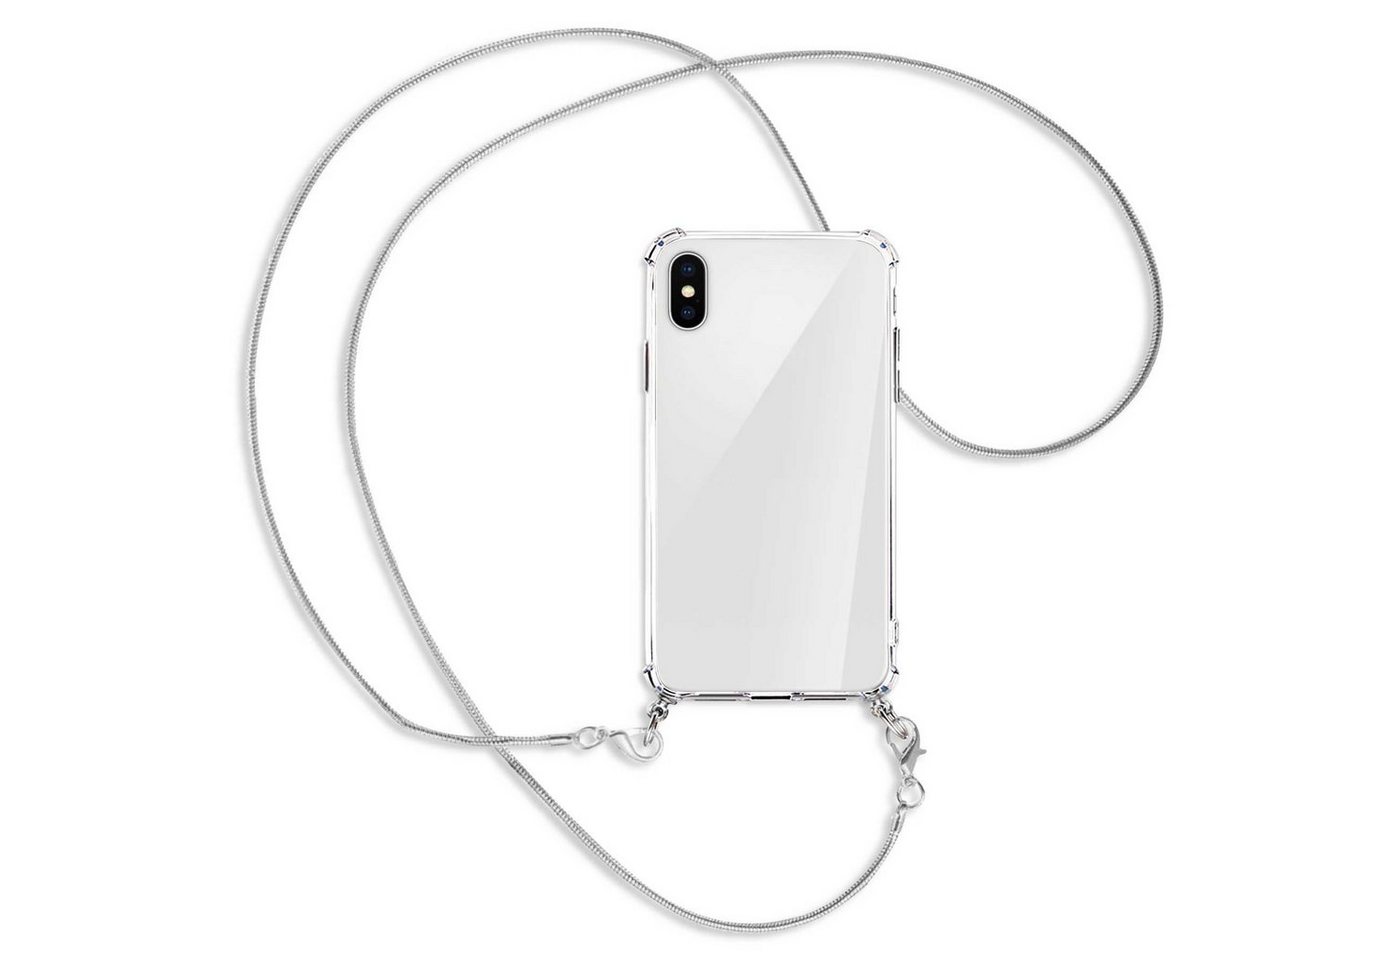 mtb more energy Handykette für Apple iPhone X / XS / 10 (5.8) [MK], Umhängehülle mit Metallkette [NC-016-MK] von mtb more energy